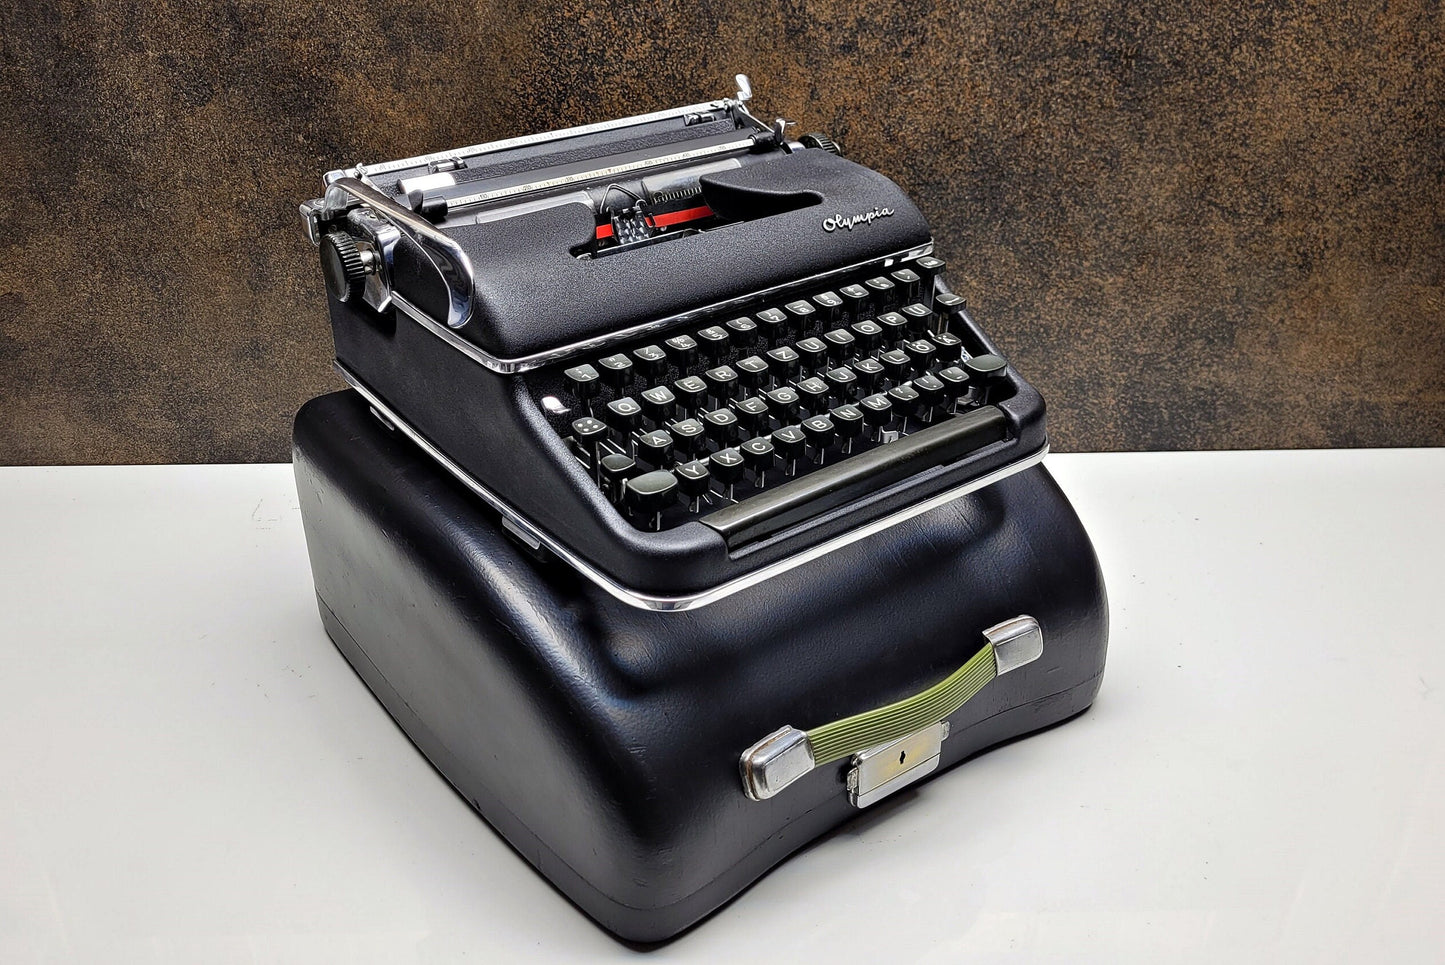 Qwerty Olympia SM3 Black Typewriter + Black Bag - Premium Gift / Typewriter World / Qwerty Typewriter, Black Typewriter